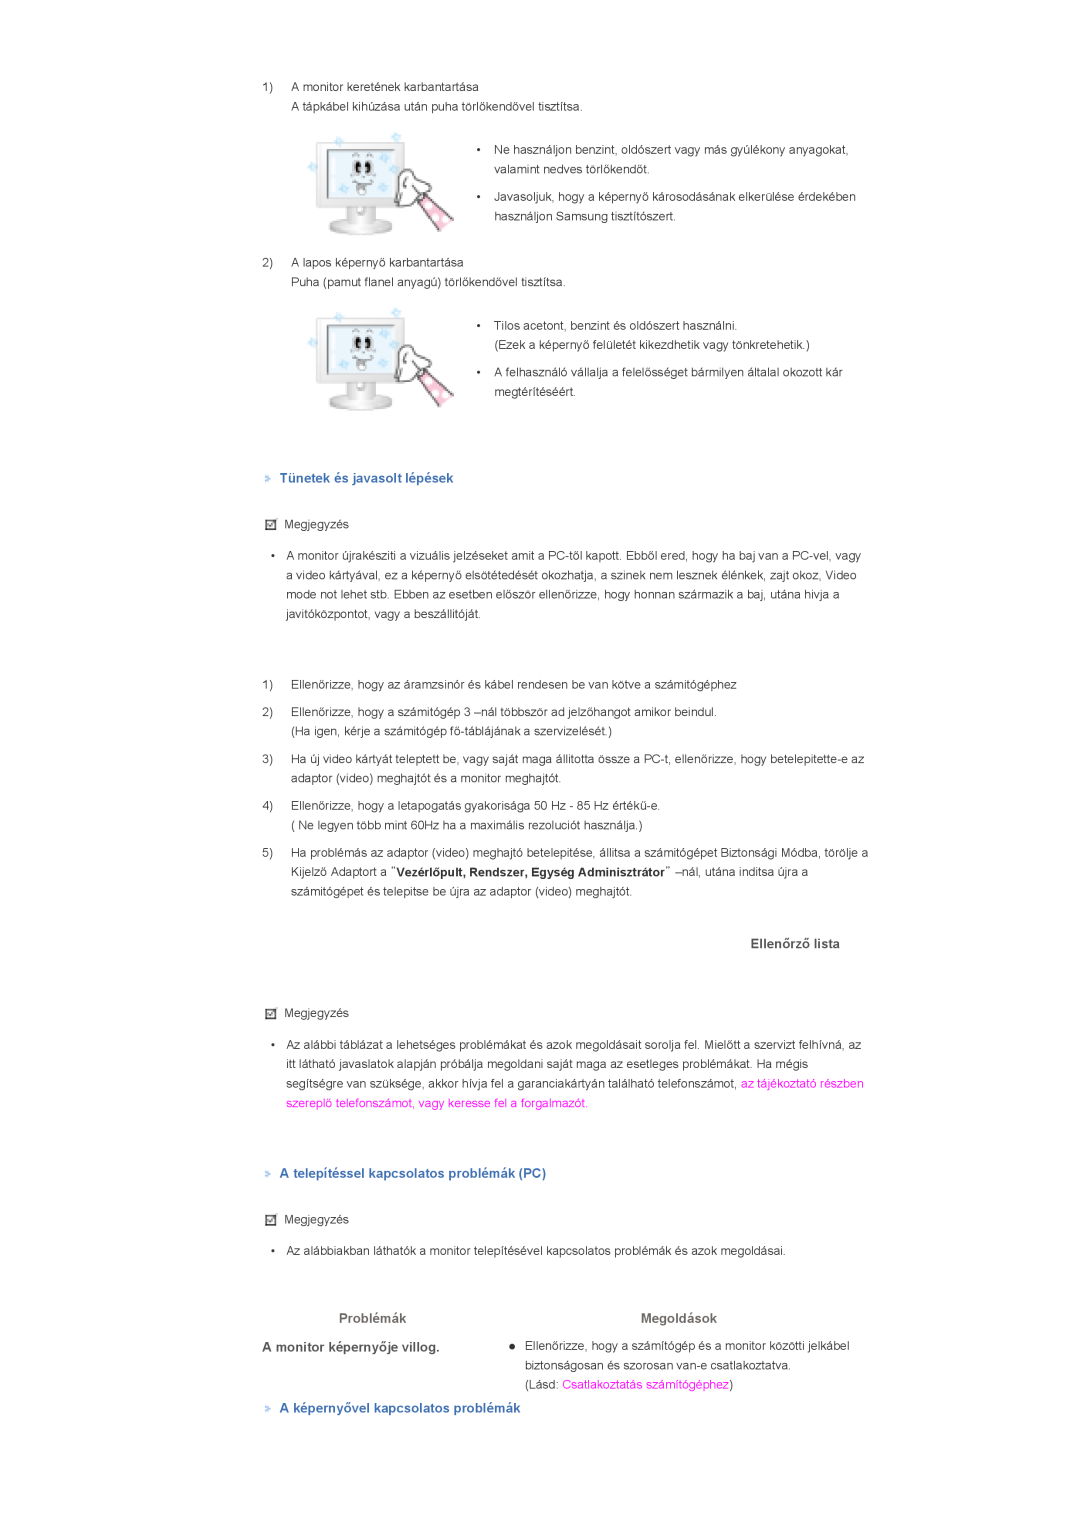 Samsung LS70BPTNB/EDC manual Tünetek és javasolt lépések, A telepítéssel kapcsolatos problémák PC, Problémák, Megoldások 